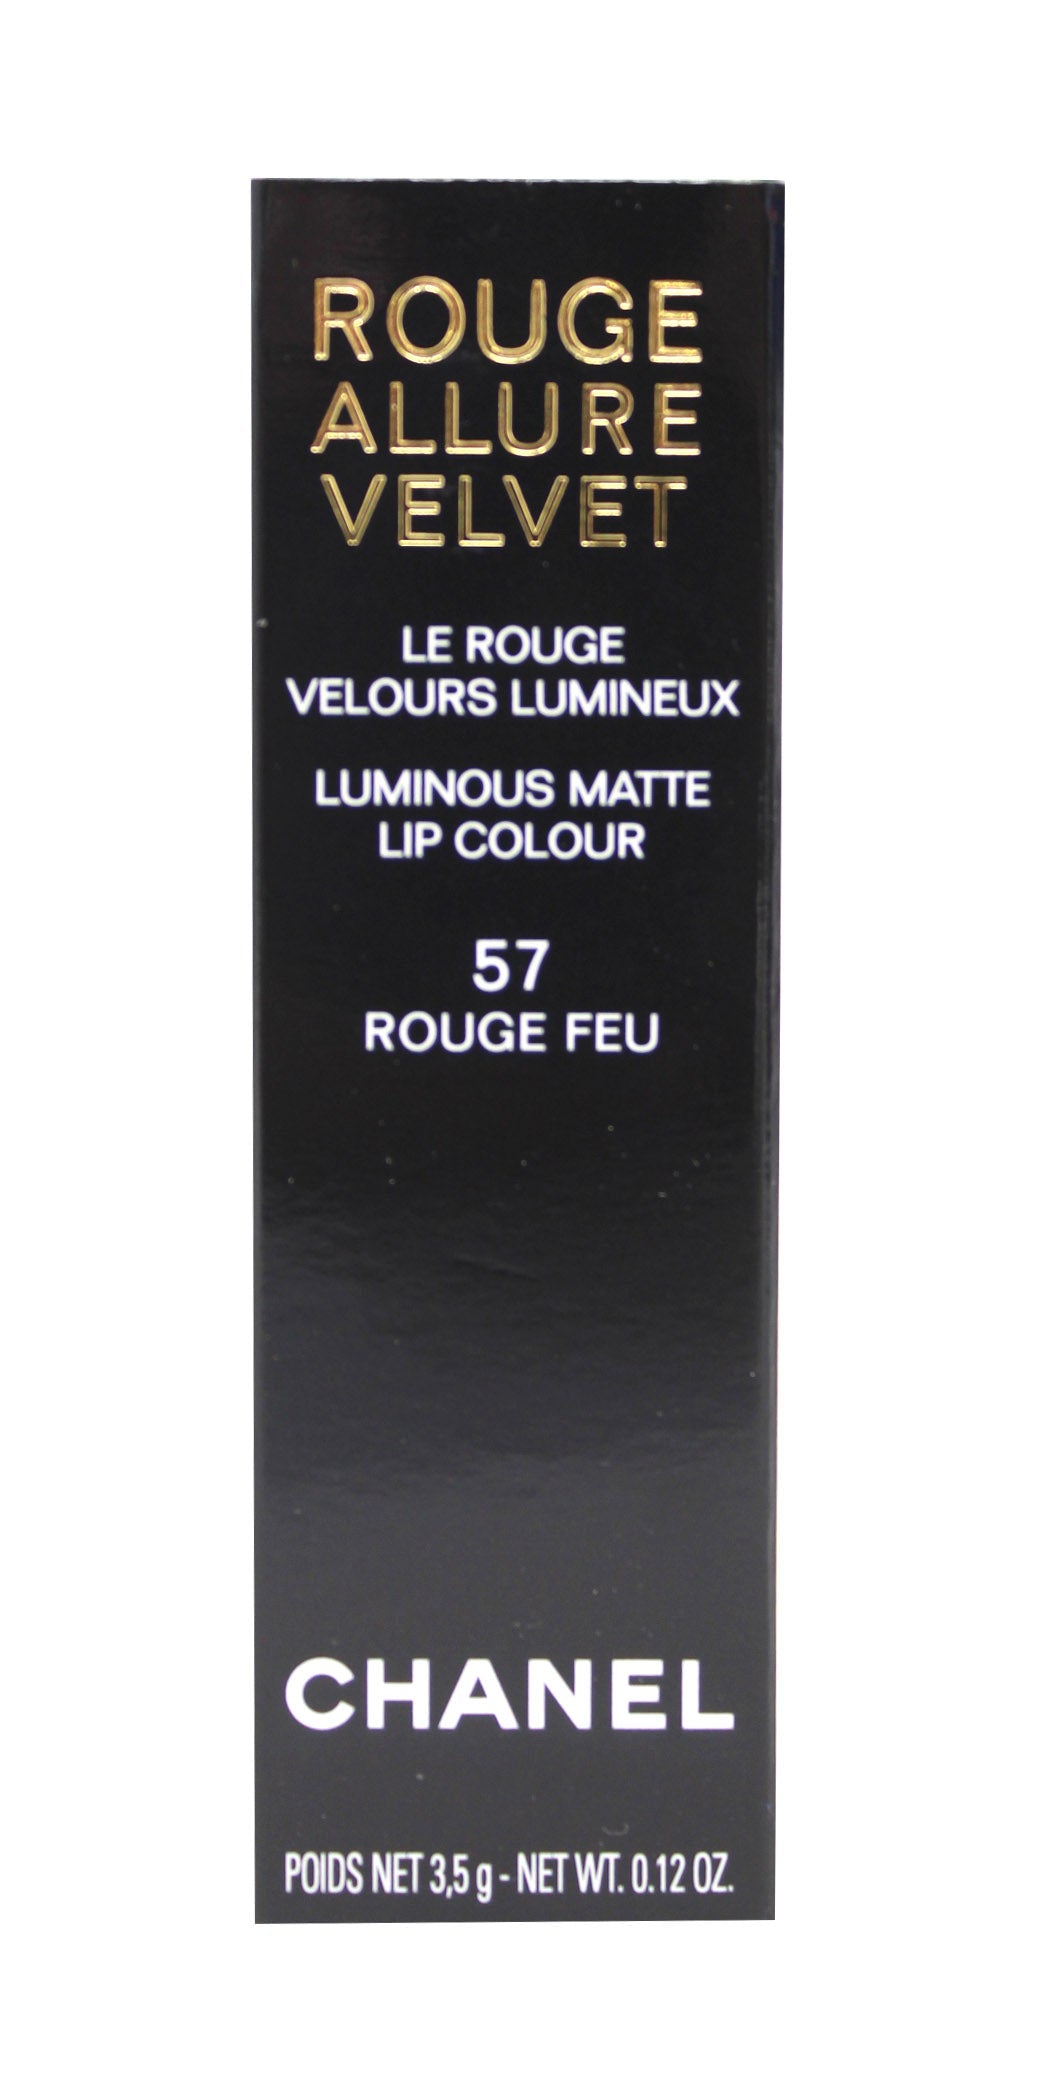 Chanel Rouge Allure Velvet Luminous Matte Lip Colour, 57 Rouge Feu